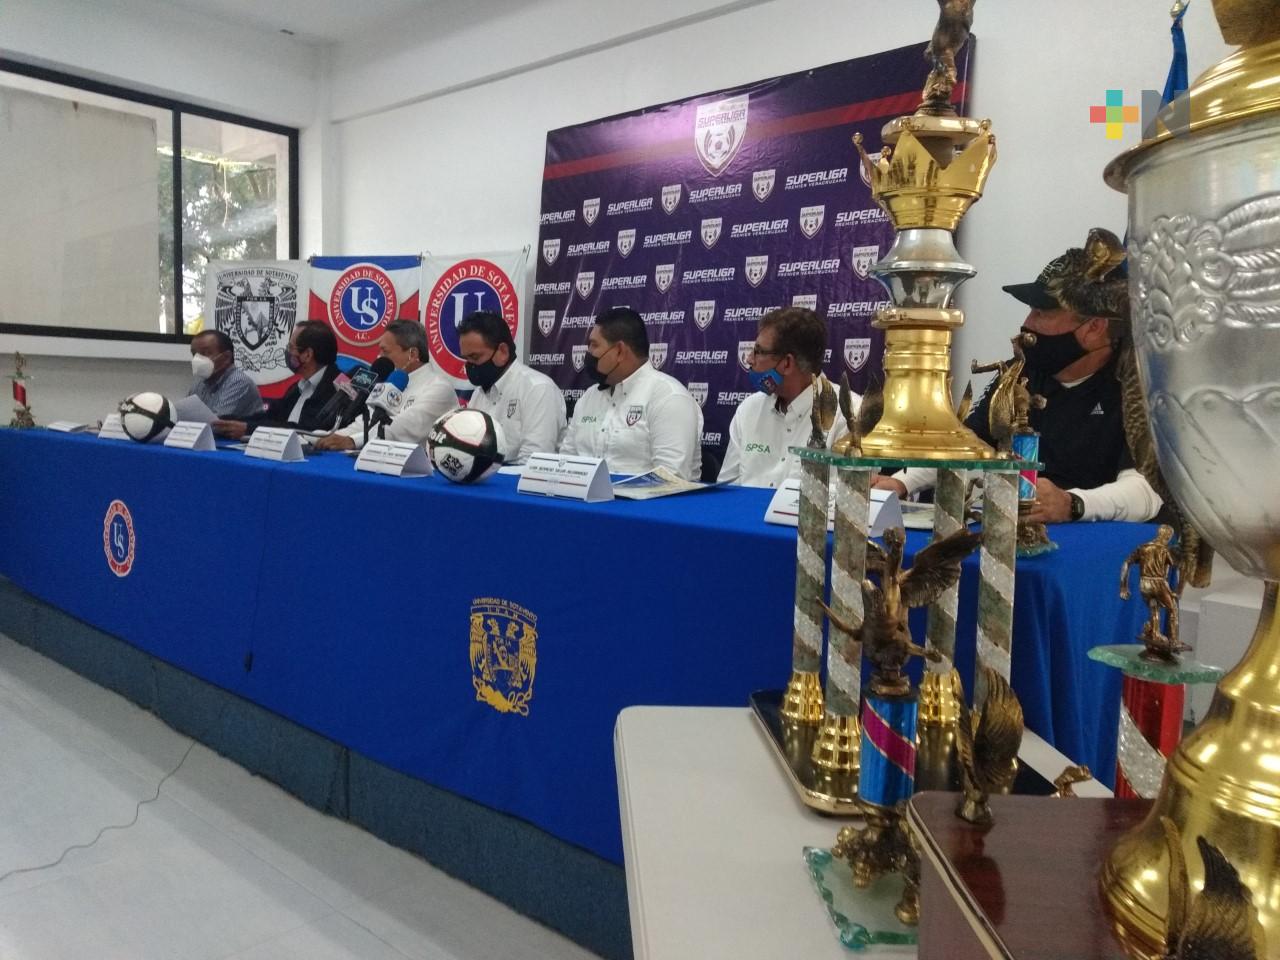 Equipos de Veracruz y Oaxaca en la Superliga Premier Veracruzana de futbol